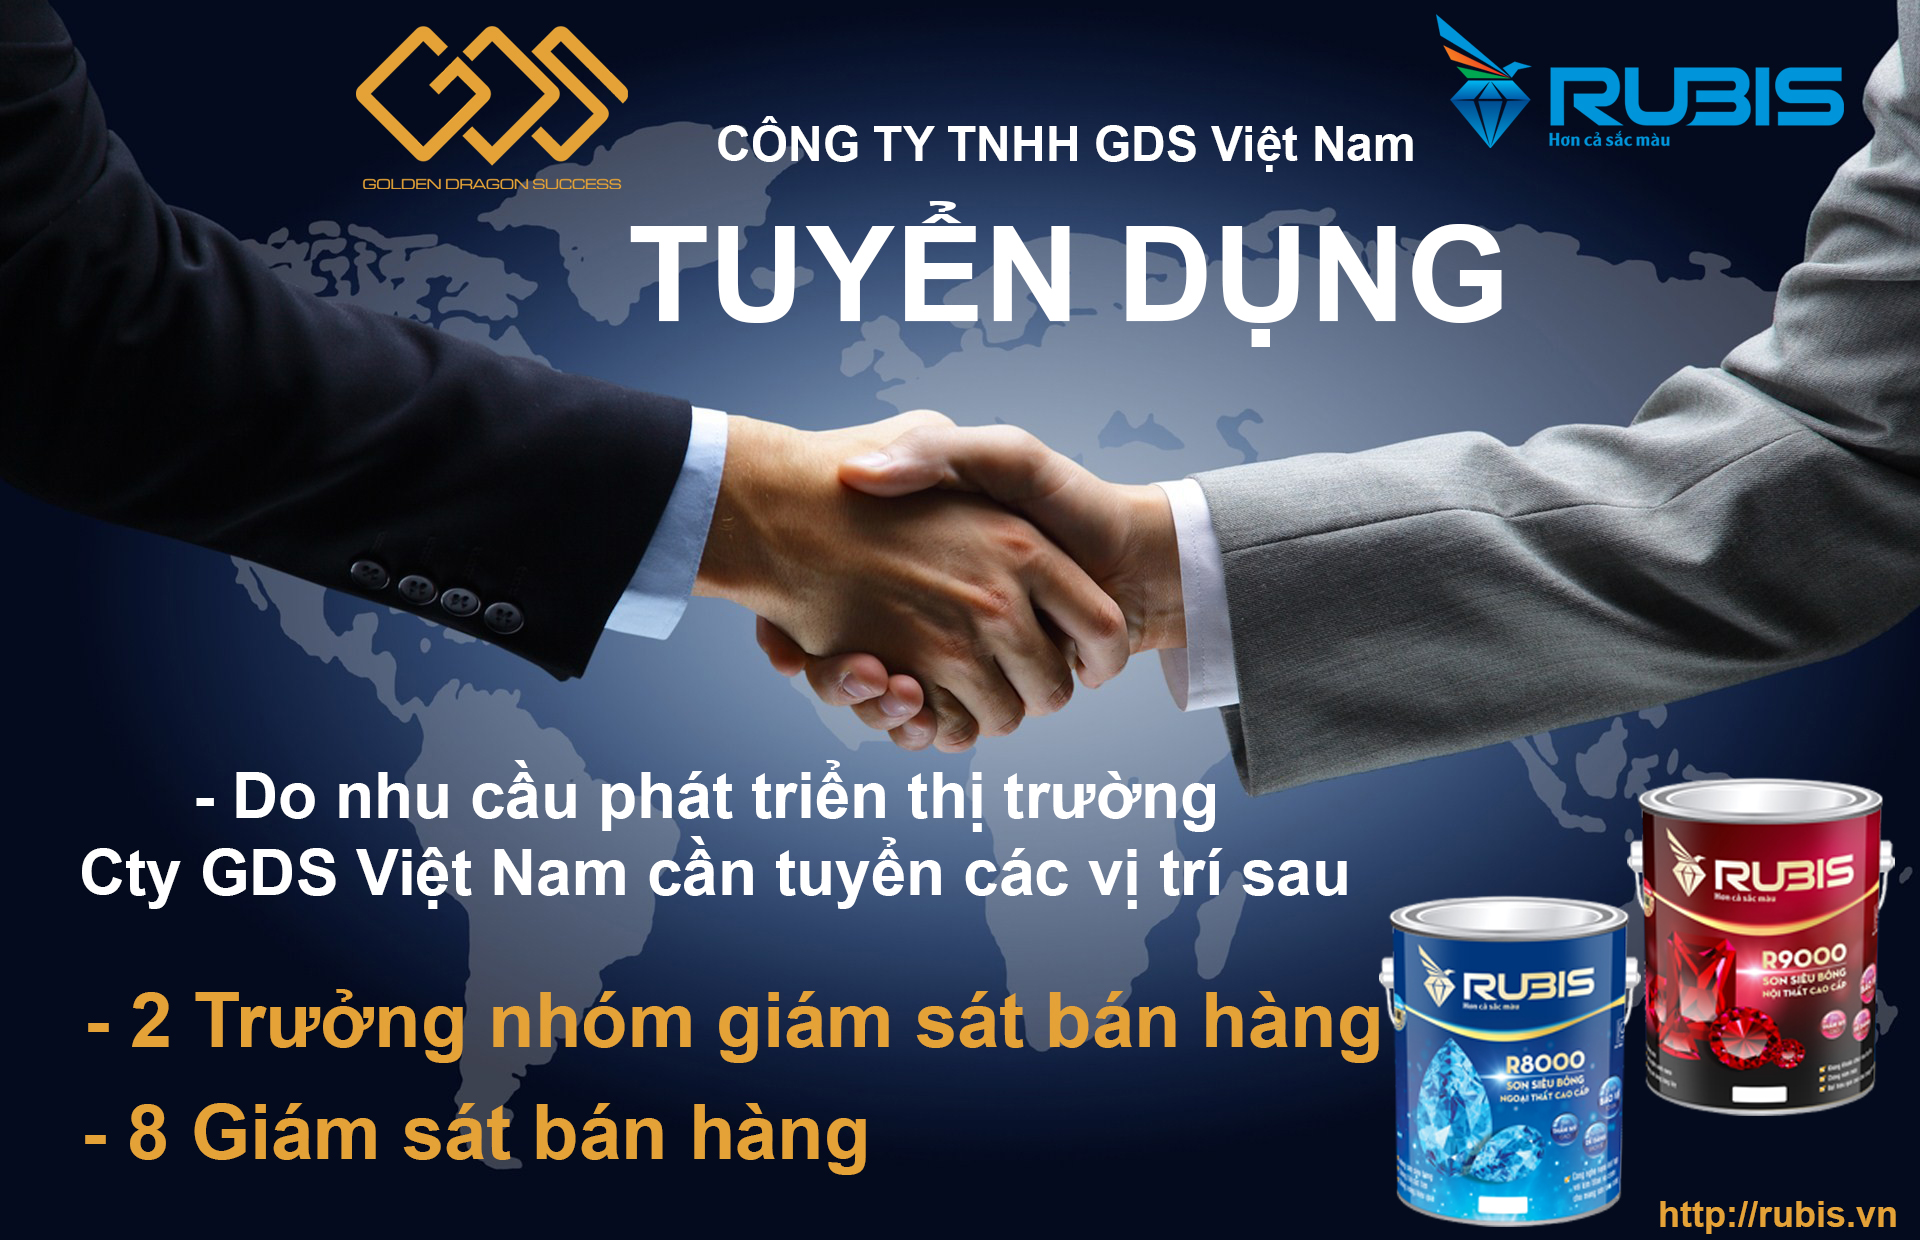 Tuyen Dung Giam Sat Ban Hang